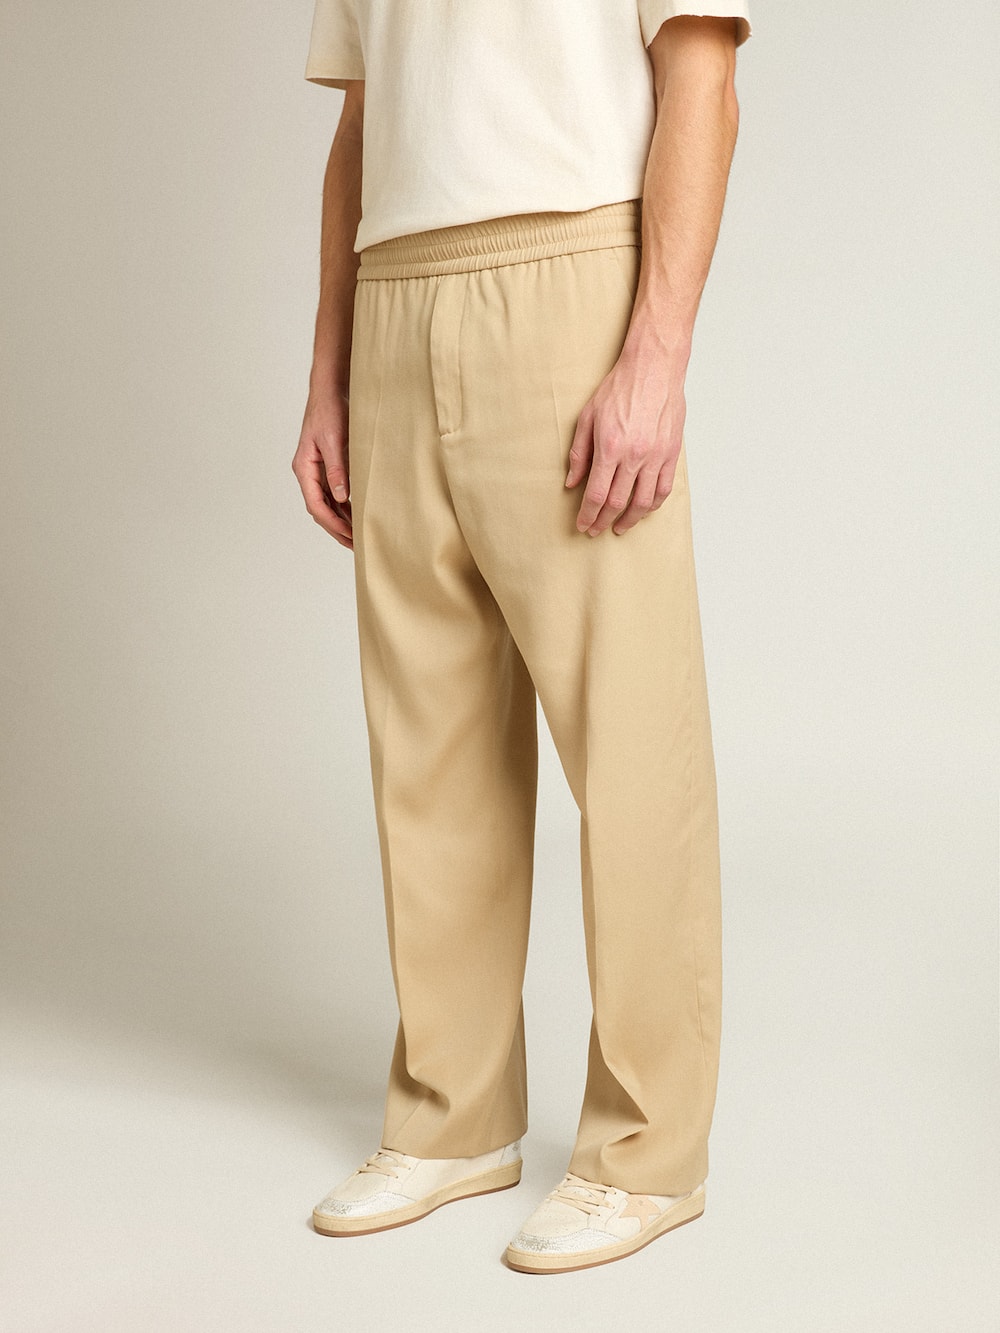 Golden Goose - Pantalone jogging da uomo color sabbia con tasca sul retro in 